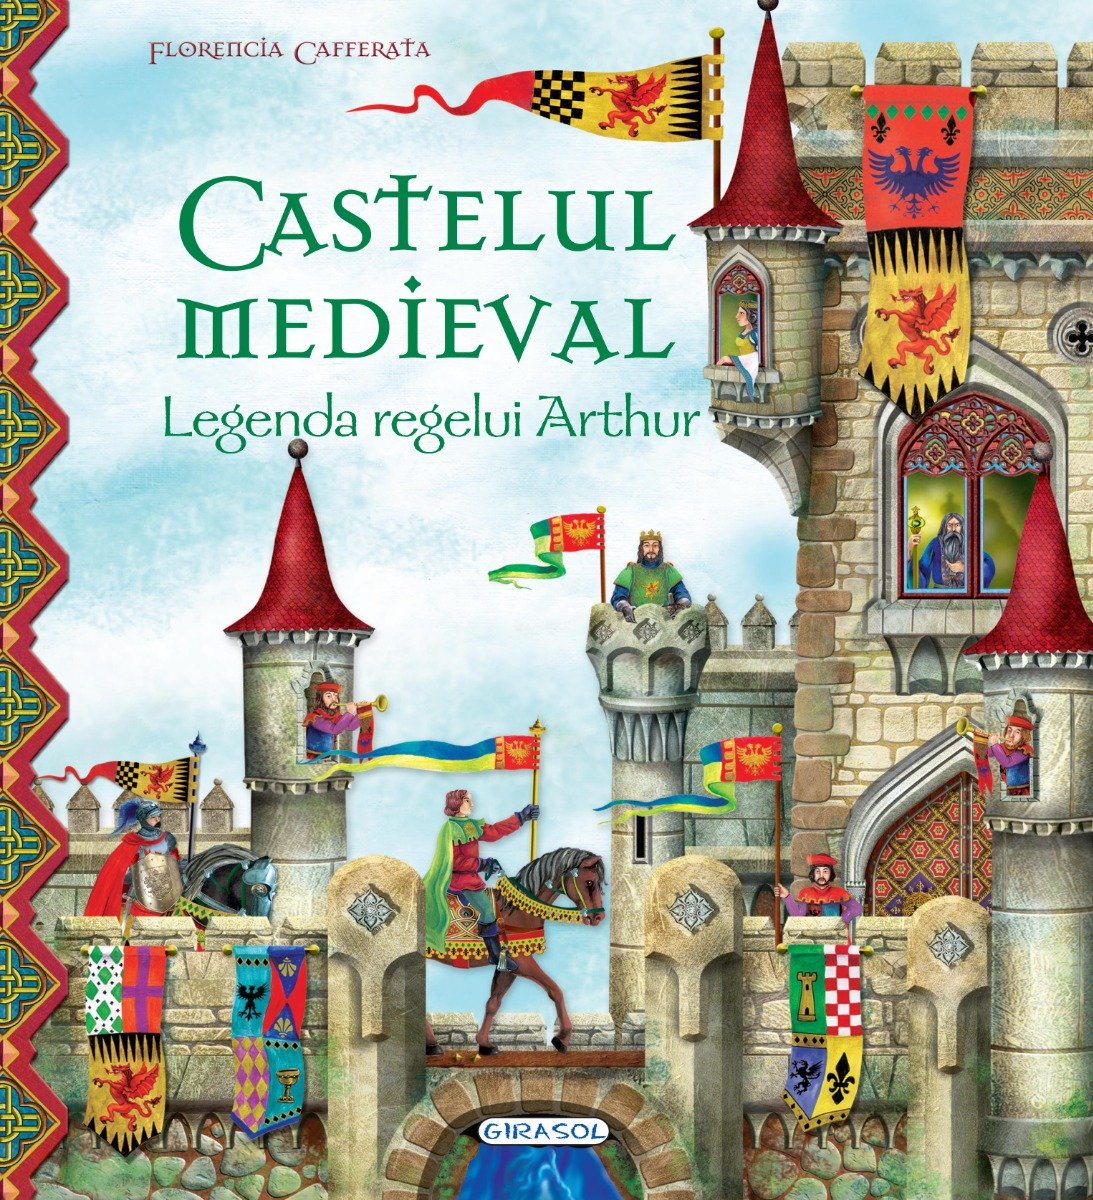 Castelul medieval - Legenda regelui Arthur